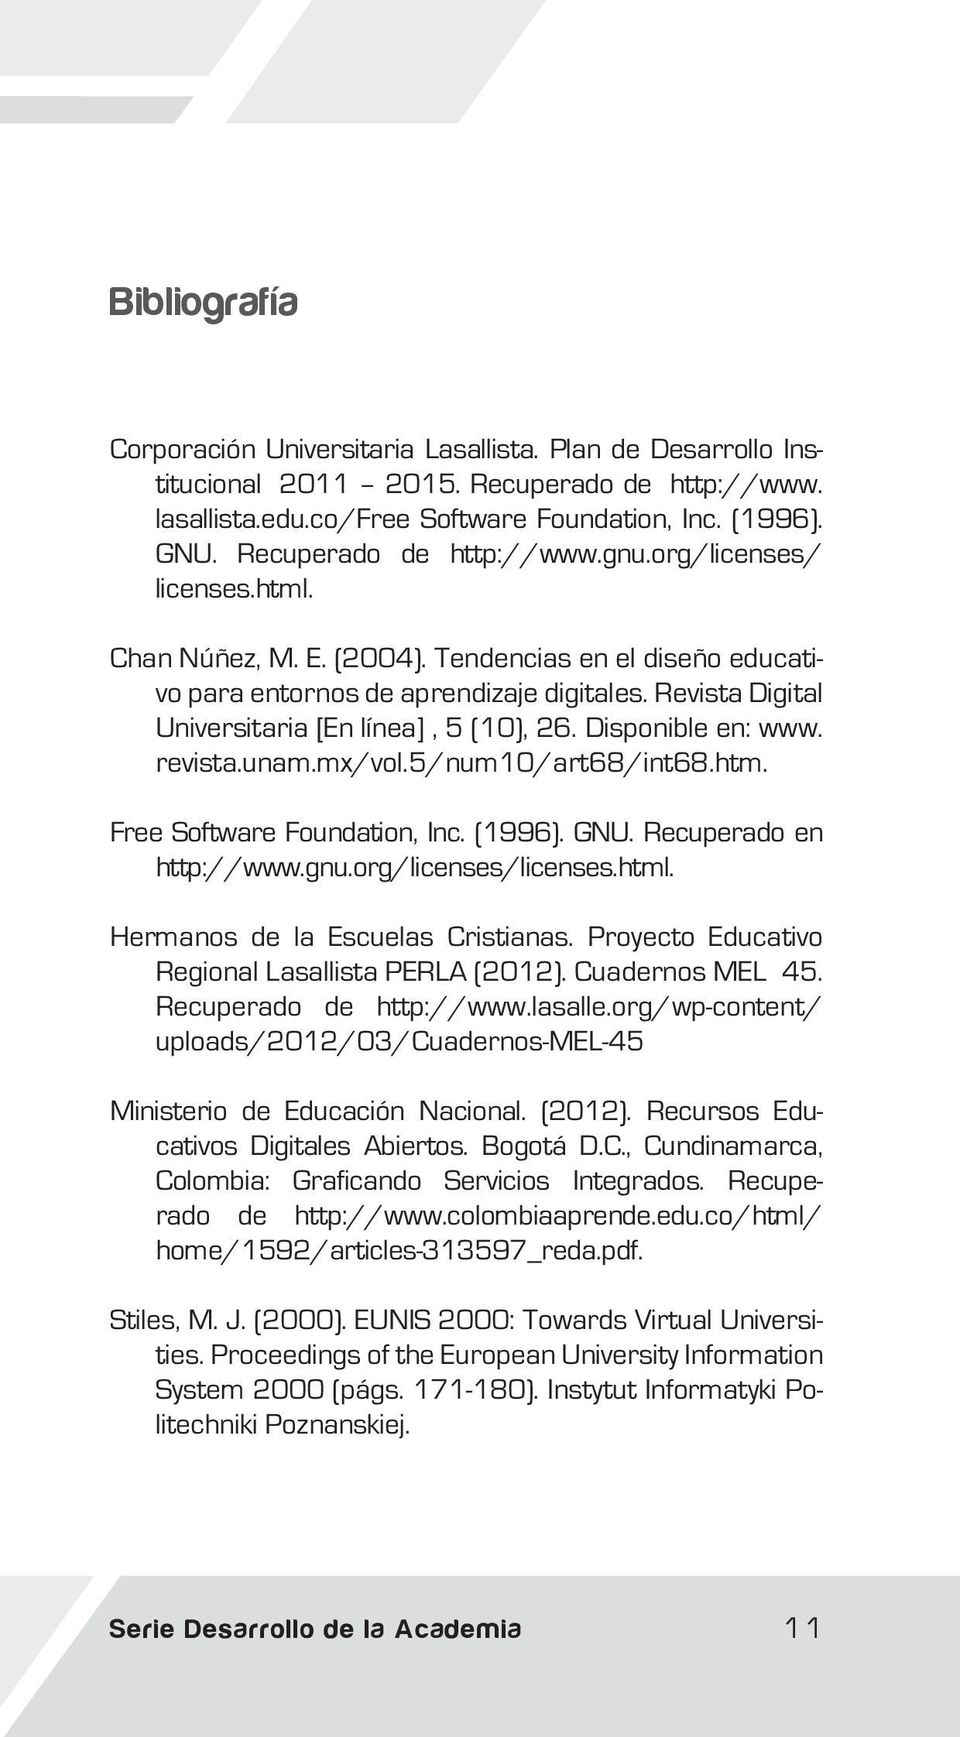 Revista Digital Universitaria [En línea], 5 (10), 26. Disponible en: www. revista.unam.mx/vol.5/num10/art68/int68.htm. Free Software Foundation, Inc. (1996). GNU. Recuperado en http://www.gnu.